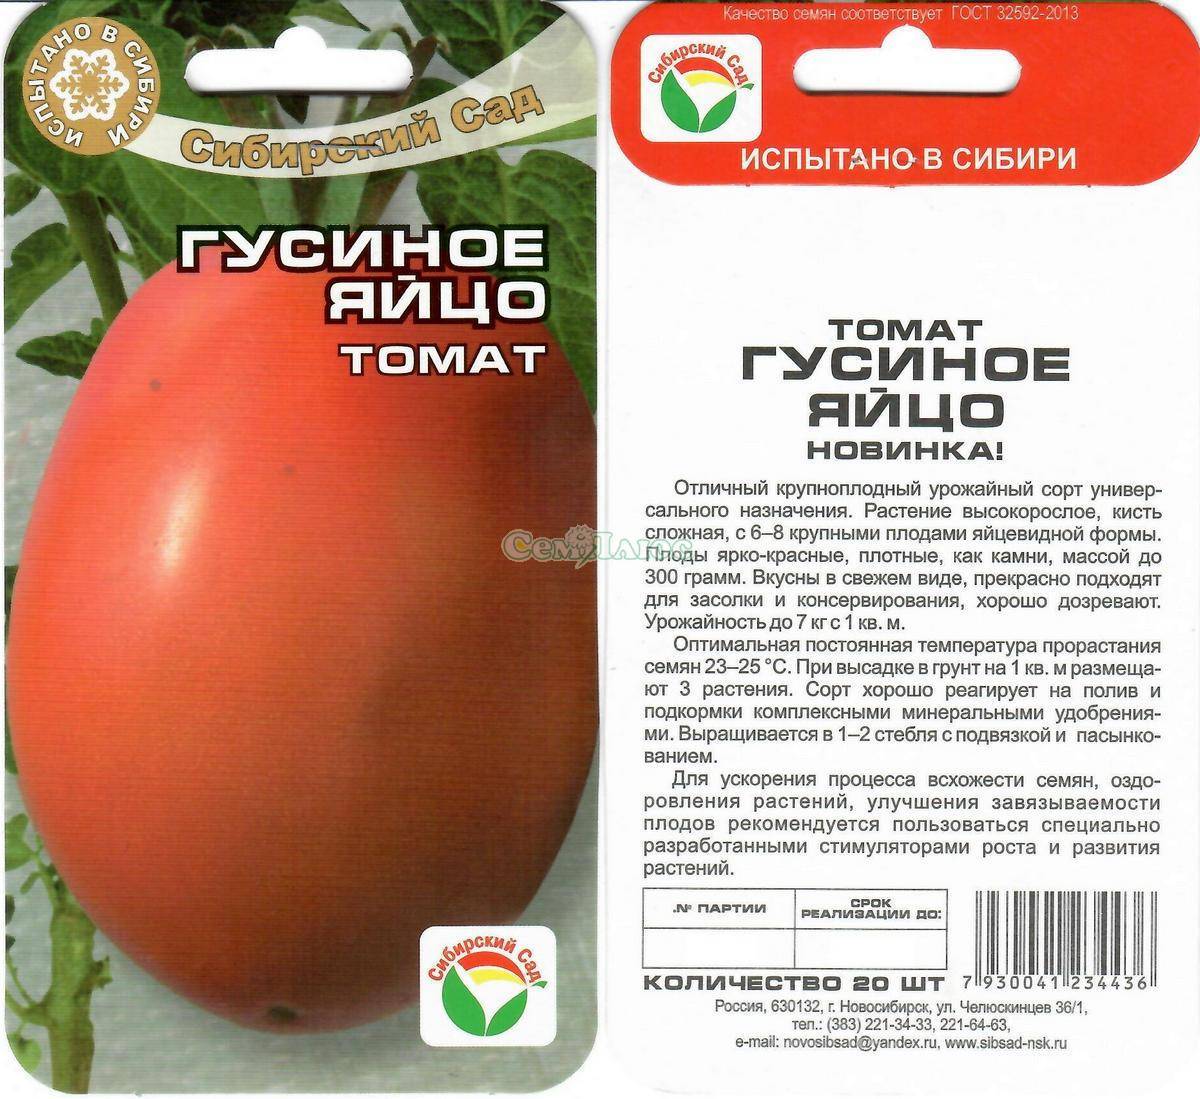 Яркий представитель нового коктейльного вида – томат «пасхальное яйцо»: полноценный обзор